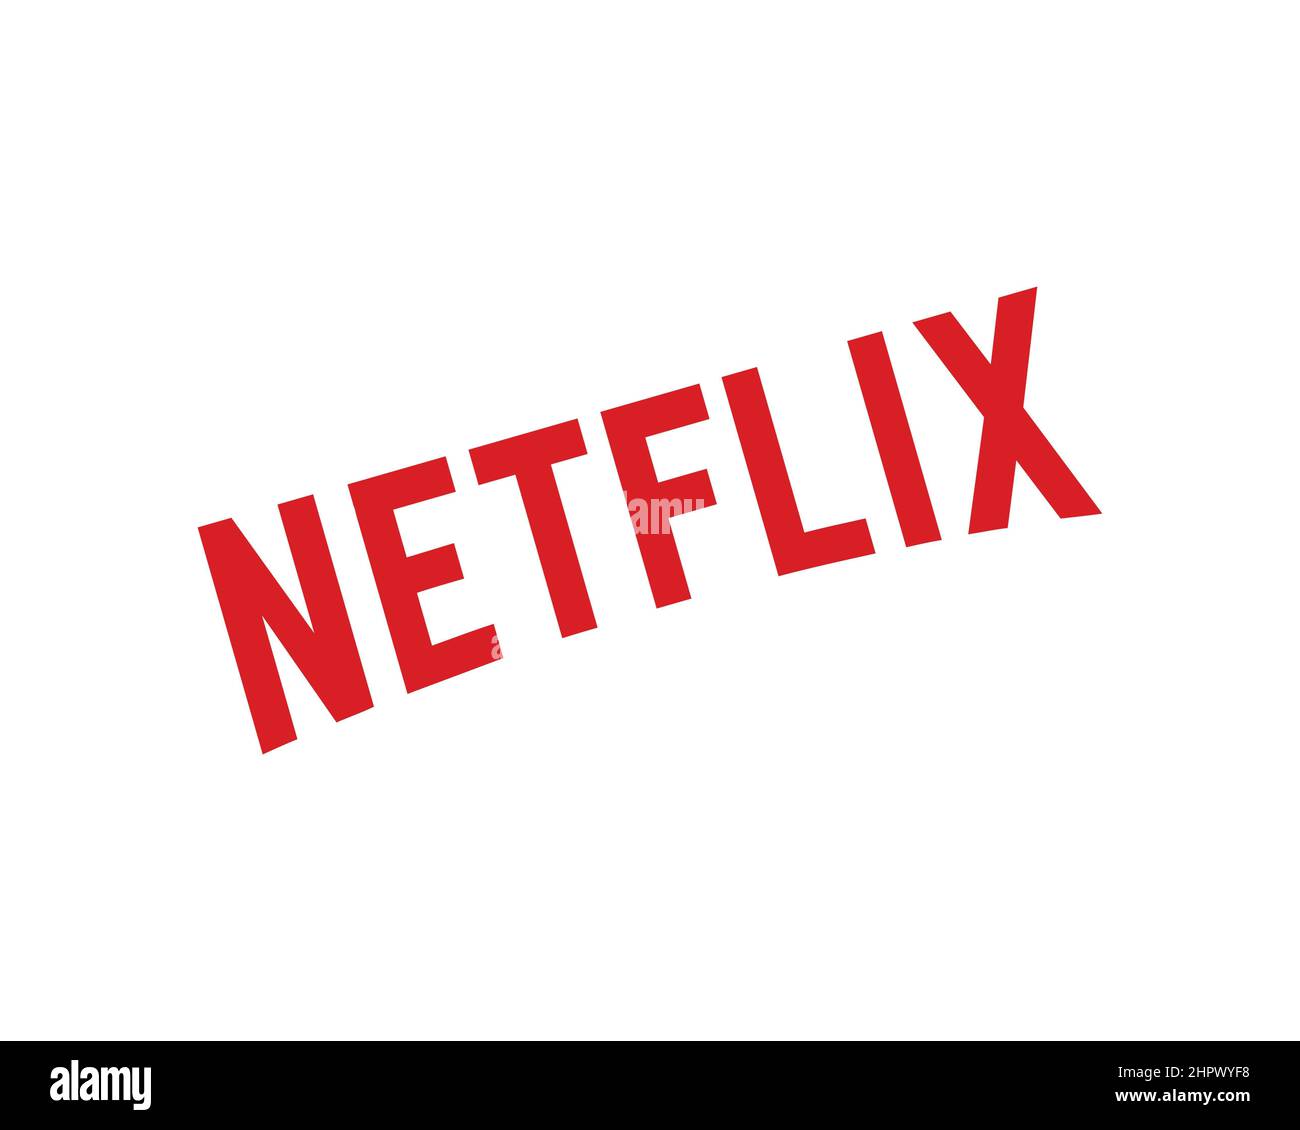 Thương hiệu Netflix là một trong những thương hiệu nổi tiếng nhất thế giới với nội dung giải trí kết hợp cả chất lượng và sáng tạo. Với uy tín đã được khẳng định và đội ngũ sản xuất chuyên nghiệp, Netflix đang ngày càng được yêu thích trên toàn cầu.